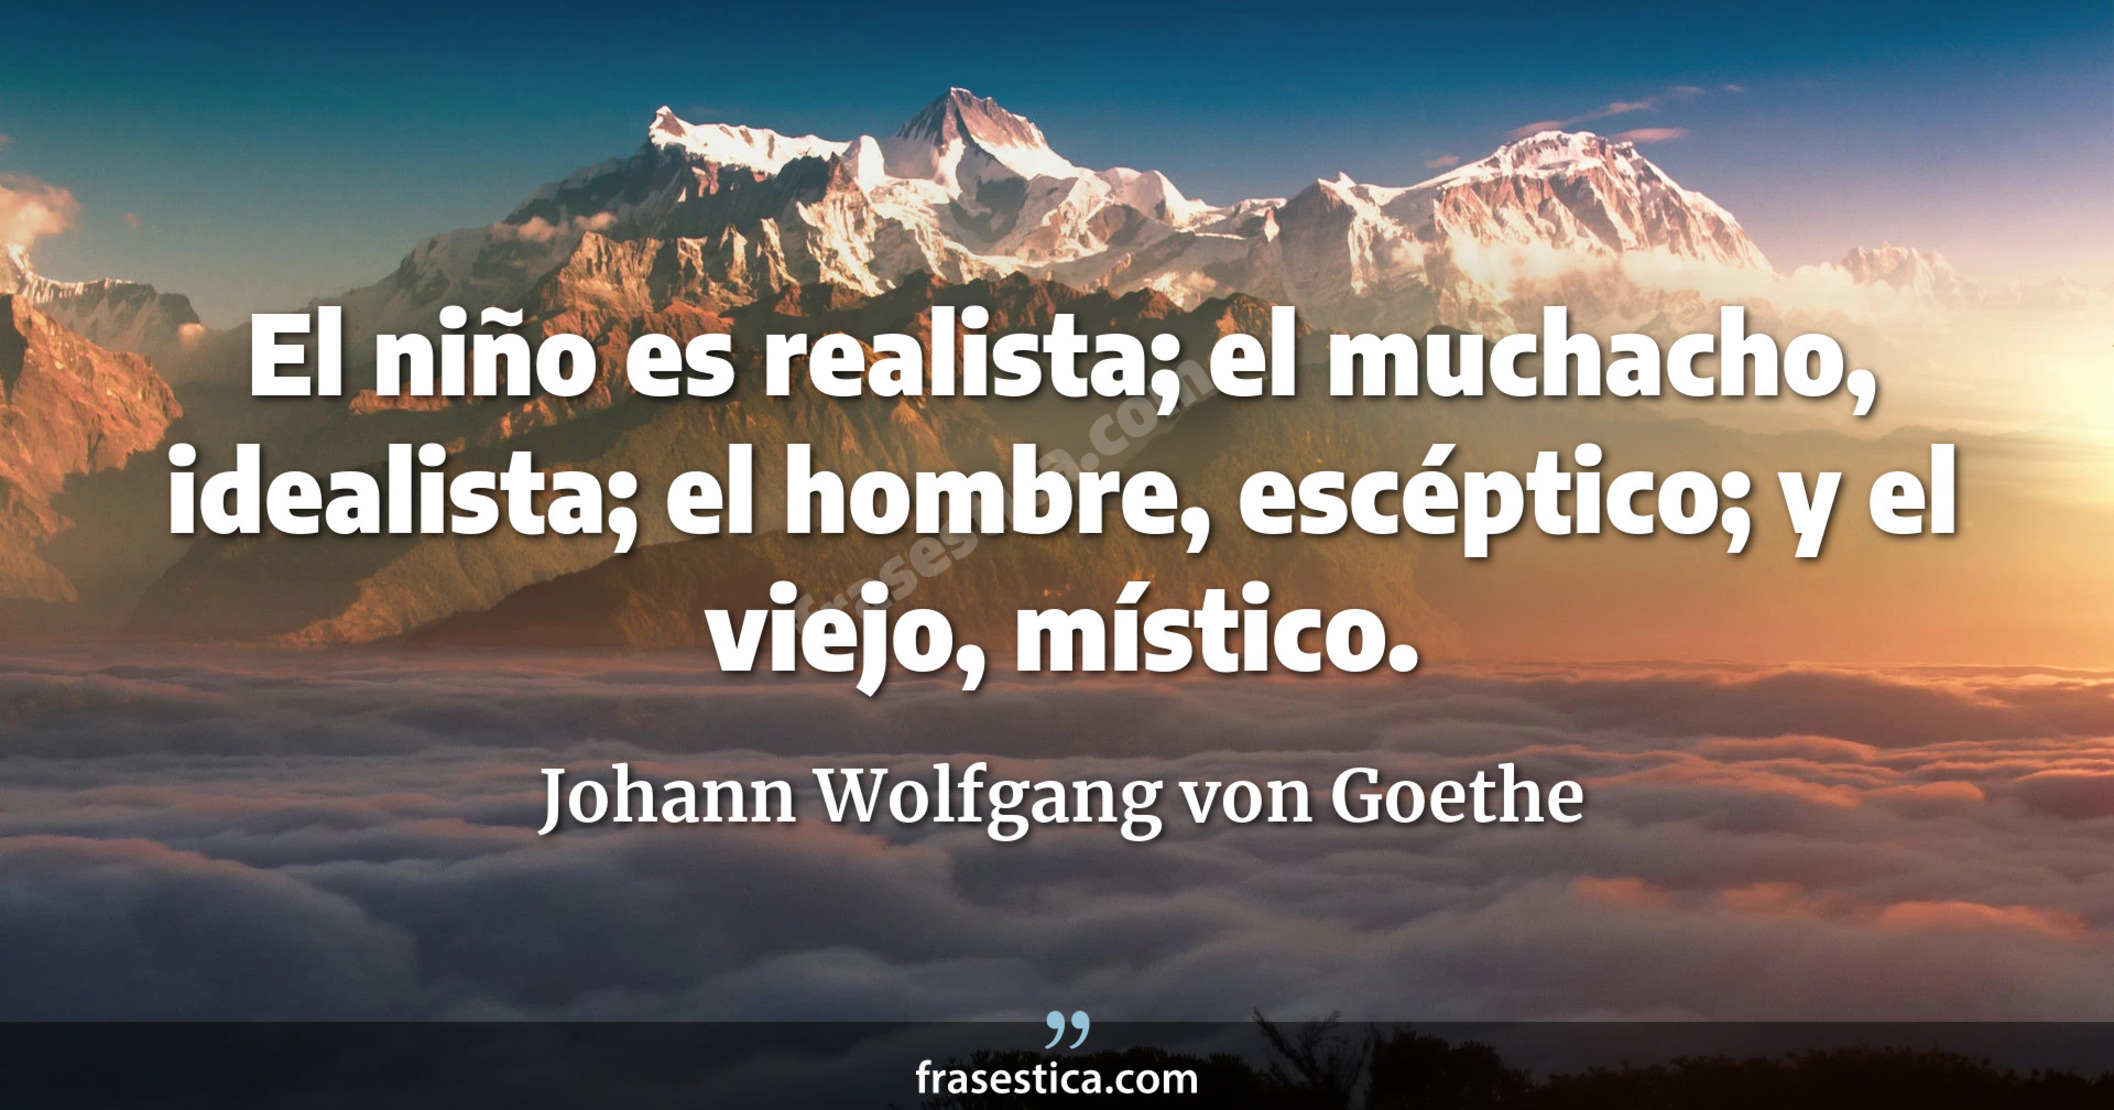 El niño es realista; el muchacho, idealista; el hombre, escéptico; y el viejo, místico. - Johann Wolfgang von Goethe